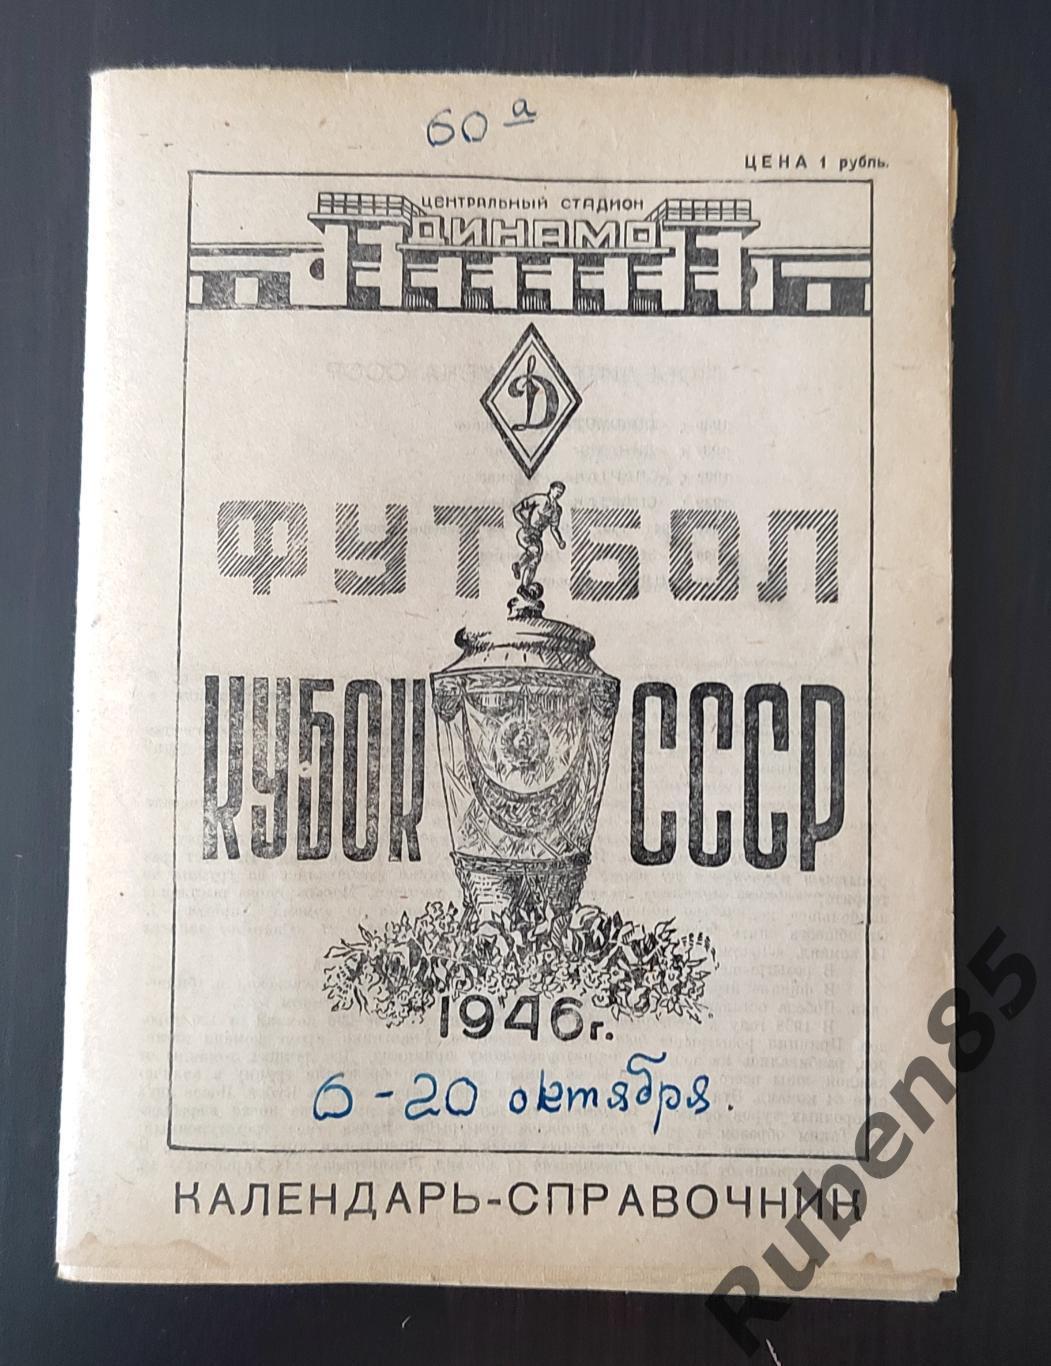 Футбол. Программа Календарь справочник Кубок СССР 1946